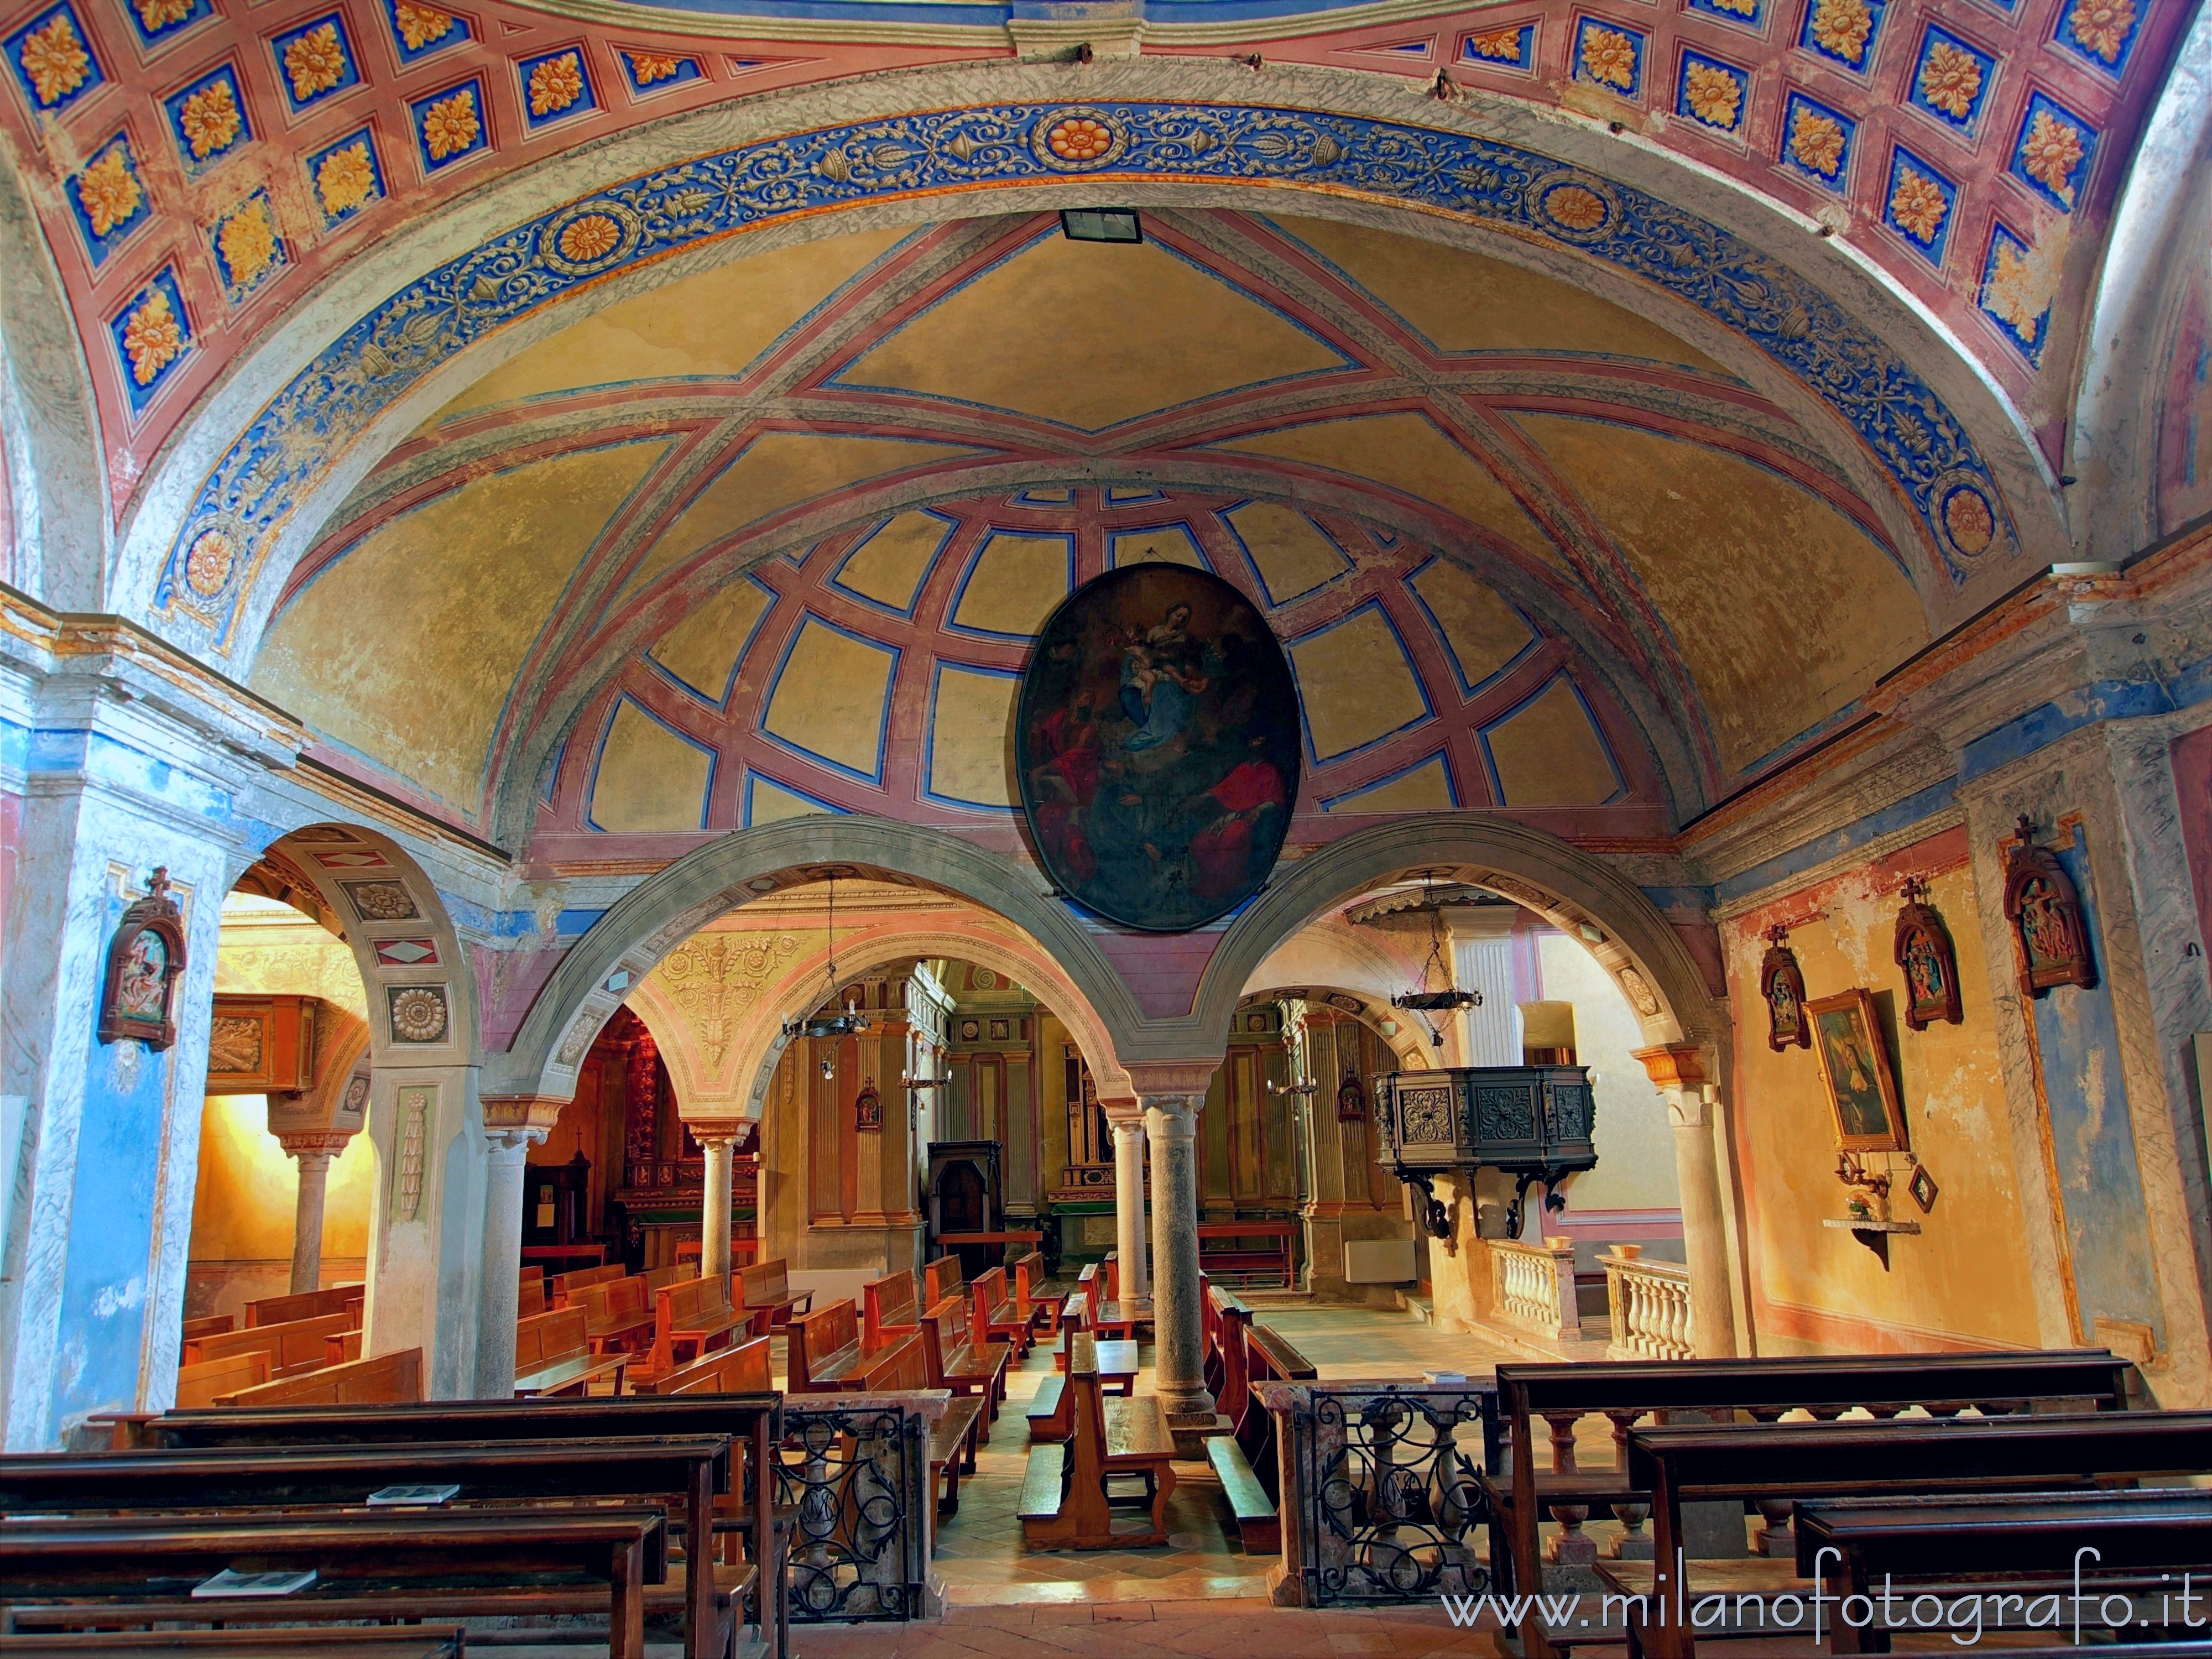 Candelo (Biella, Italy): First span of the Chapel of Santa Marta in the Church of Santa Maria Maggiore - Candelo (Biella, Italy)